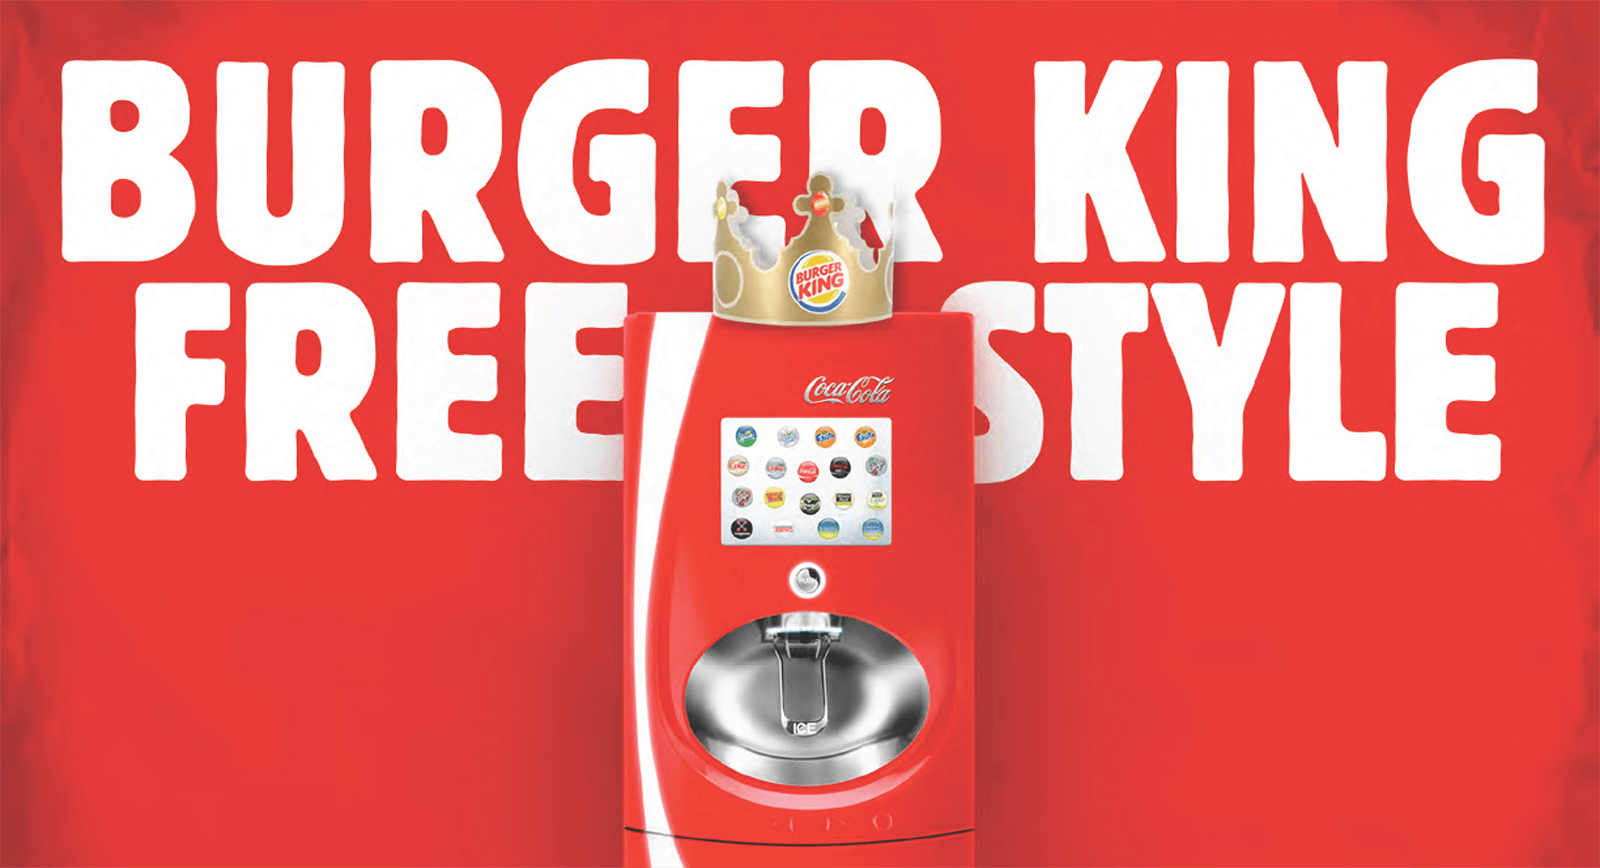 Burger King Coke Freestyle image